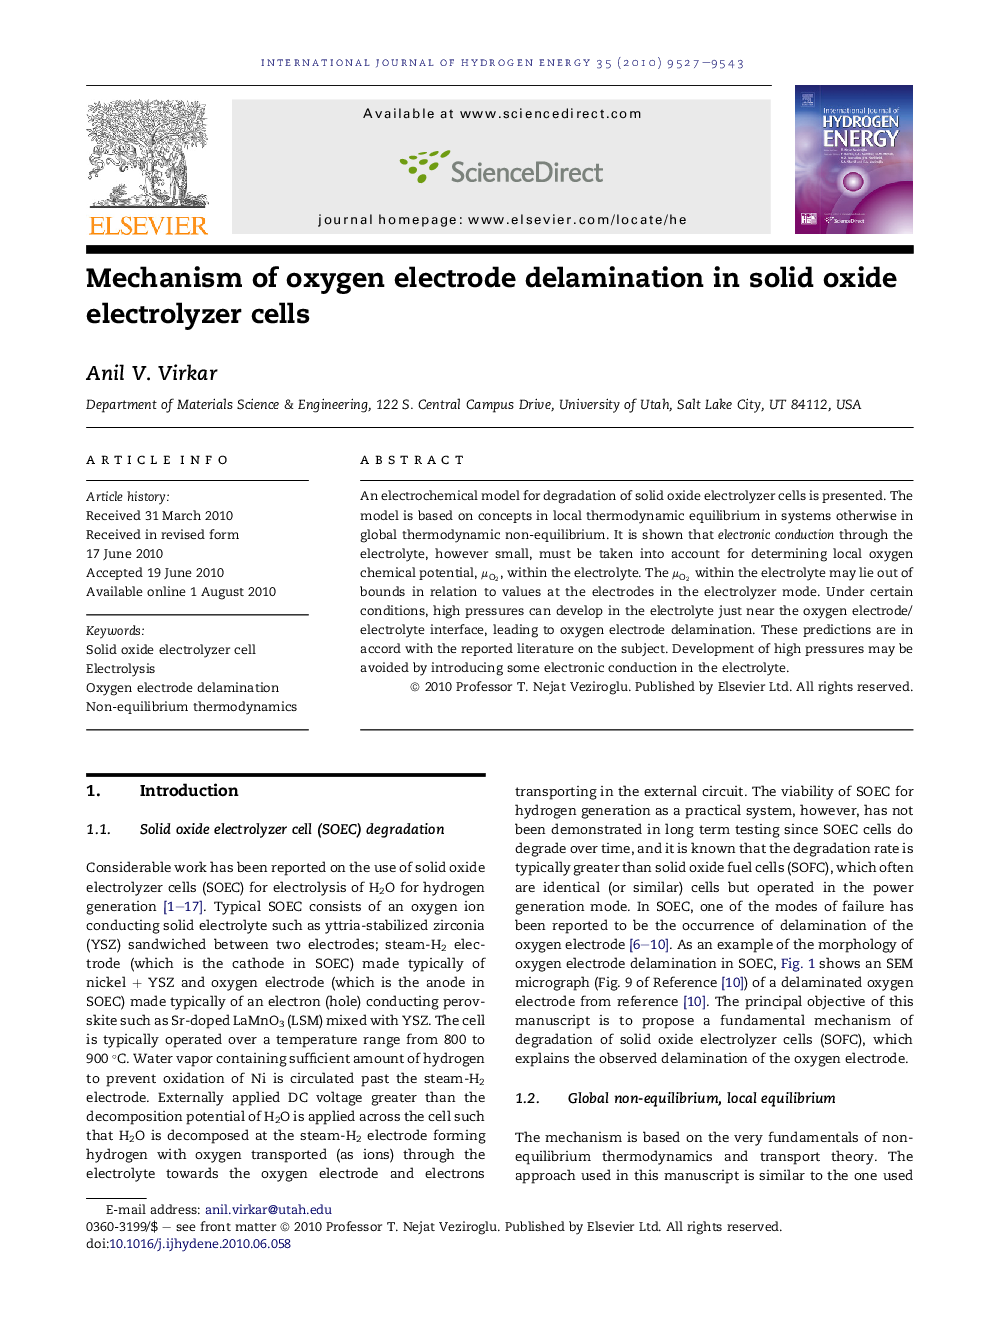 Mechanism of oxygen electrode delamination in solid oxide electrolyzer cells